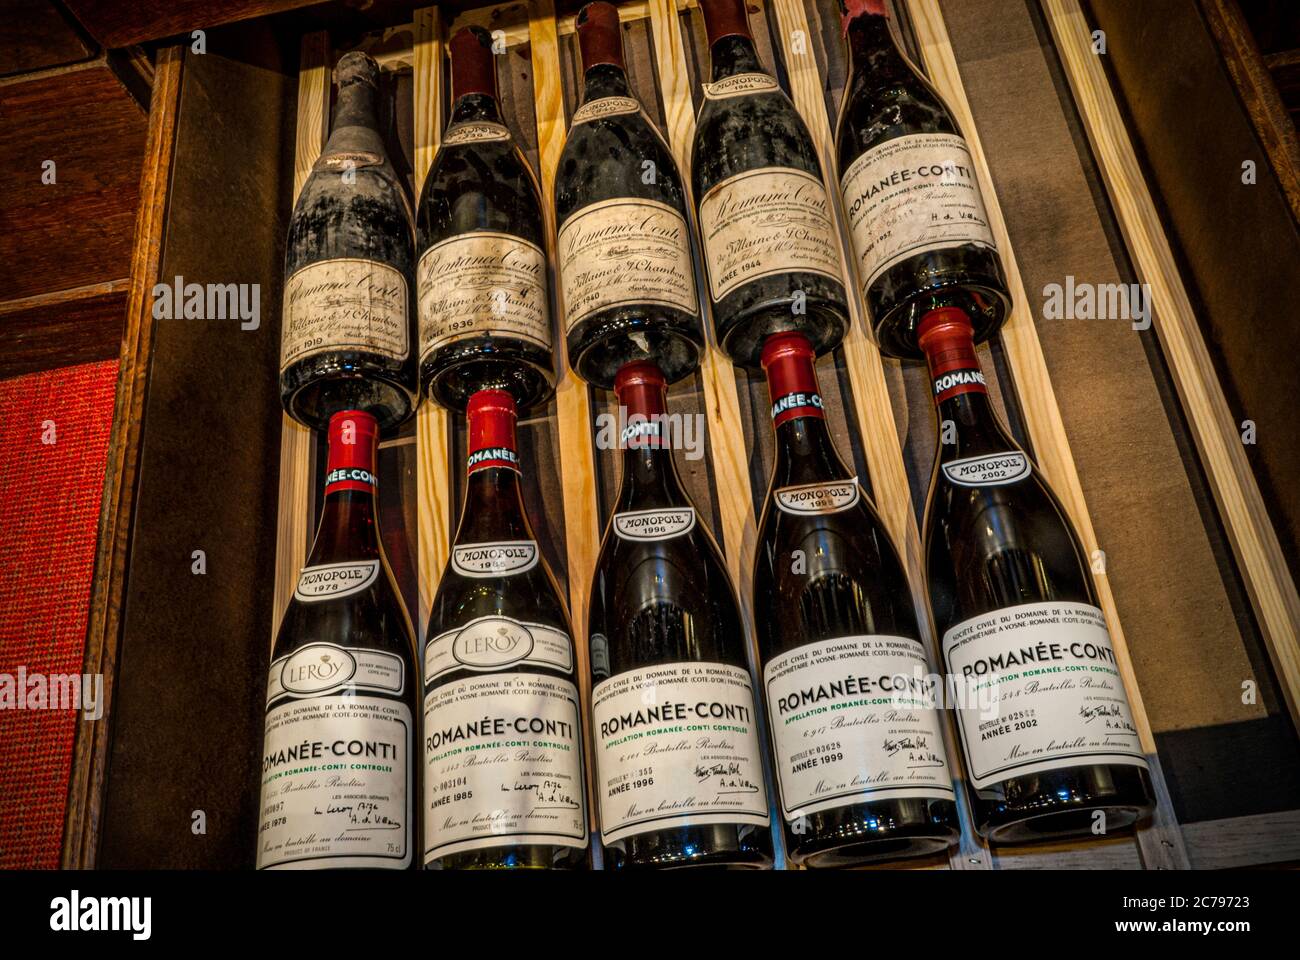 Romanée-conti bottiglie pregiate di Borgogna di valore raro datate dal 1919 al 2002, in una cantina privata raccolta Vosne Romanée Beaune Borgogna Francia Foto Stock